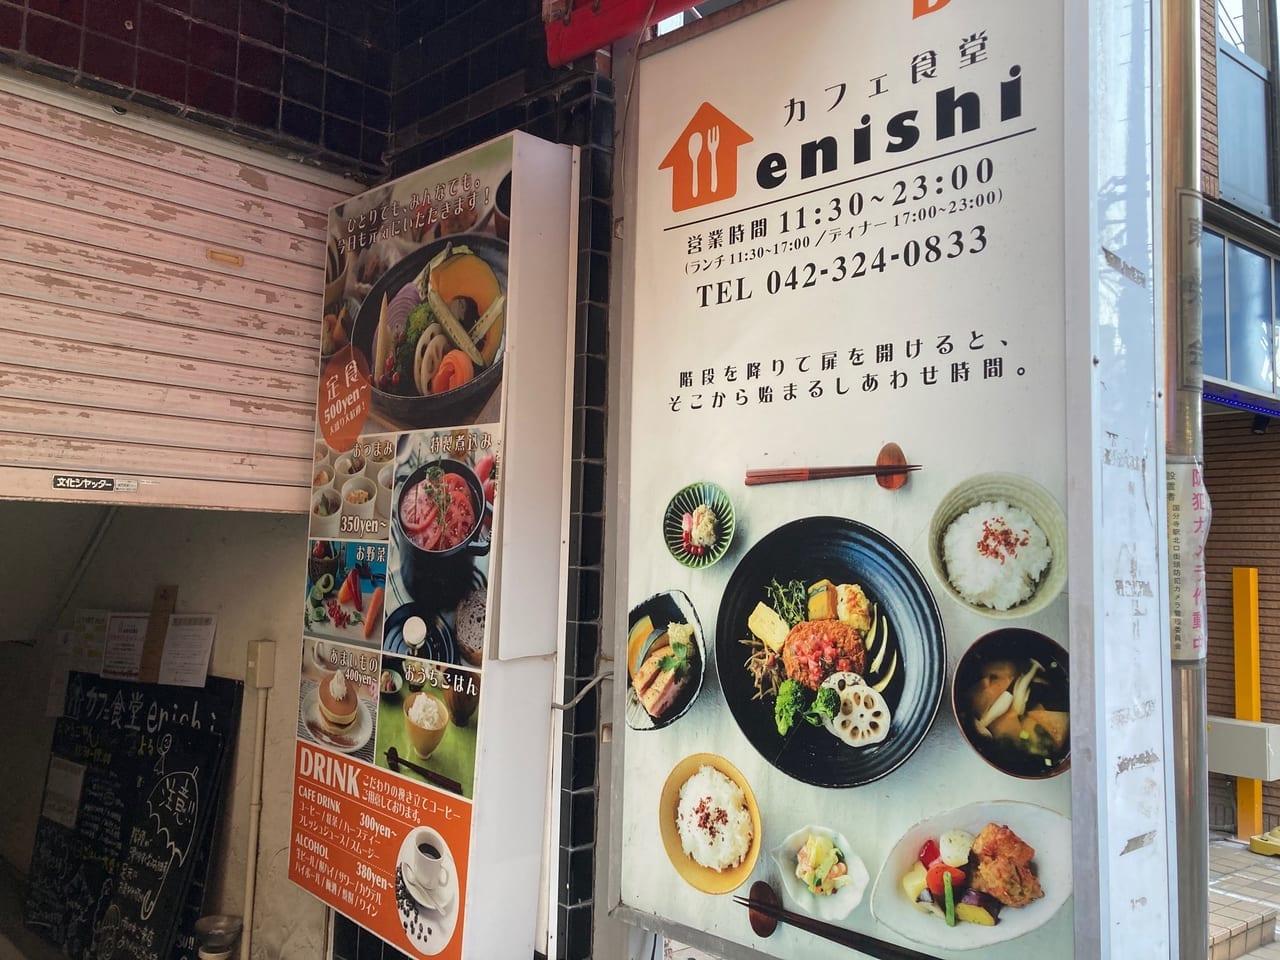 残念・・『カフェ食堂enishi』が12月25日で閉店します。26日はフリーマーケットを開催します。